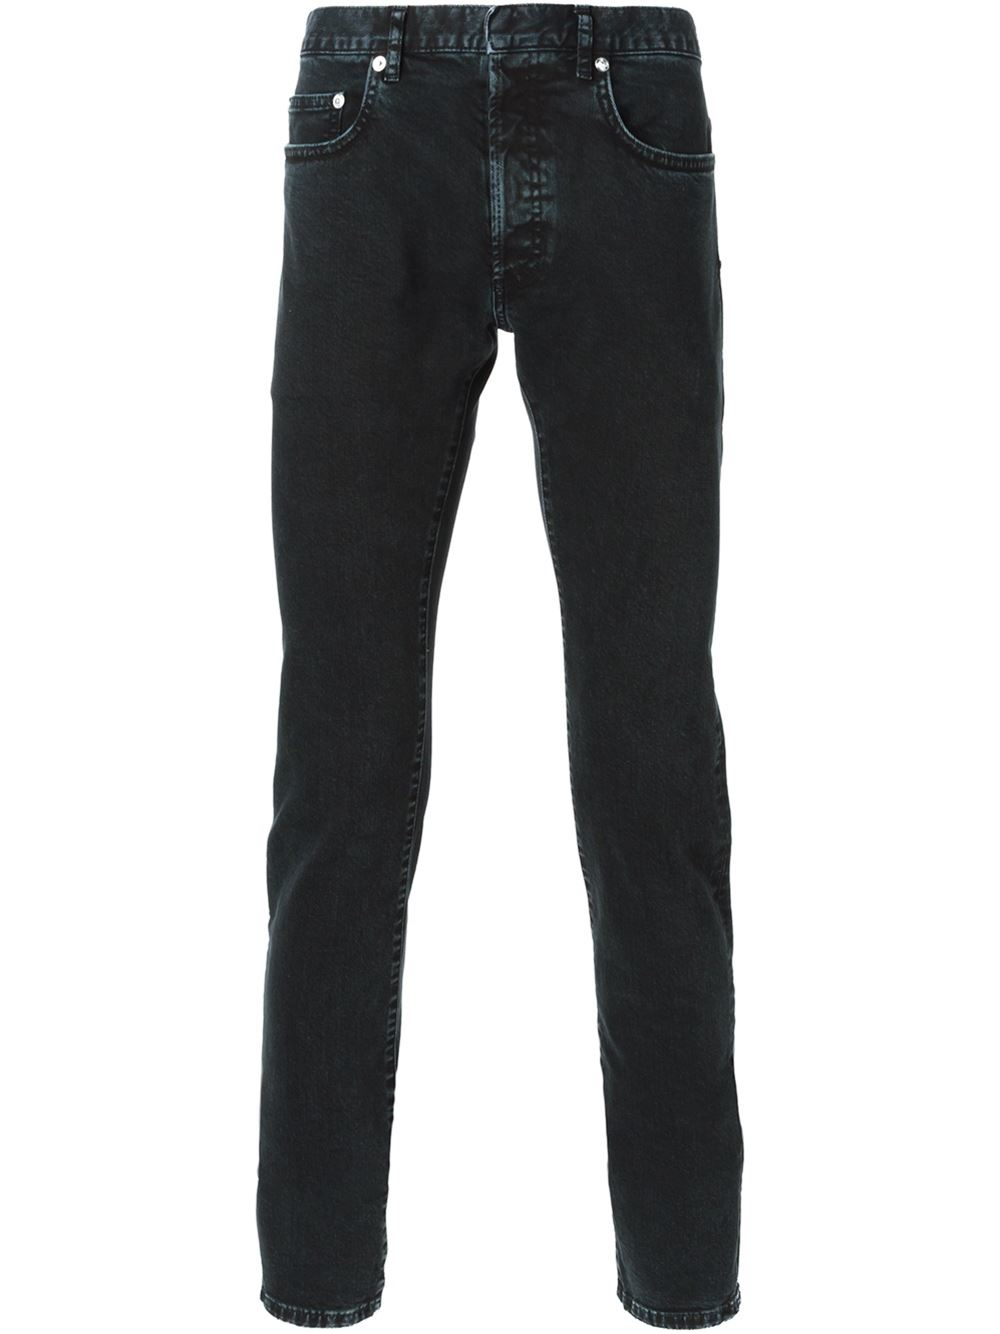 Dior Homme Denim Skinny Jeans in Black for Men - Lyst